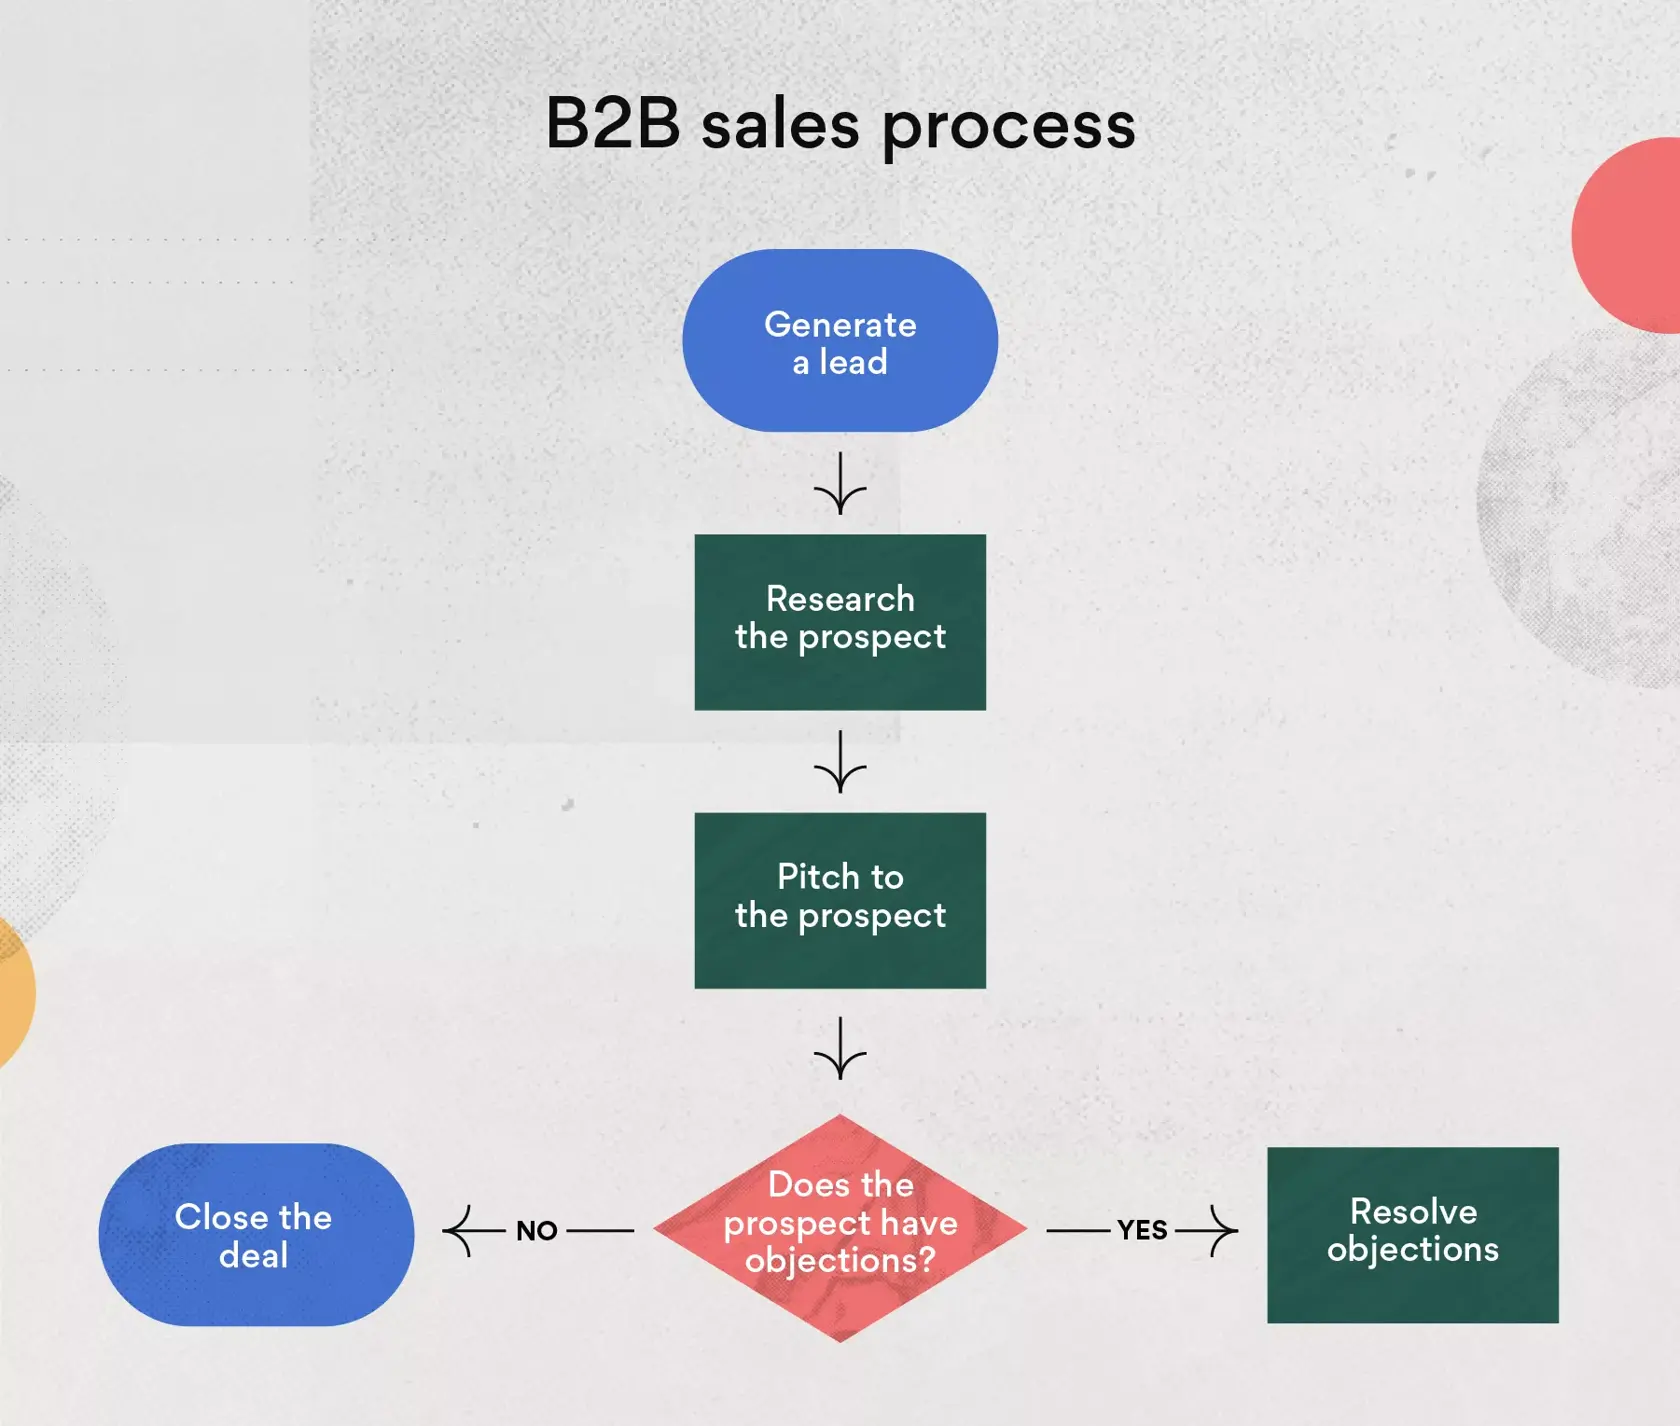 Contoh proses penjualan B2B